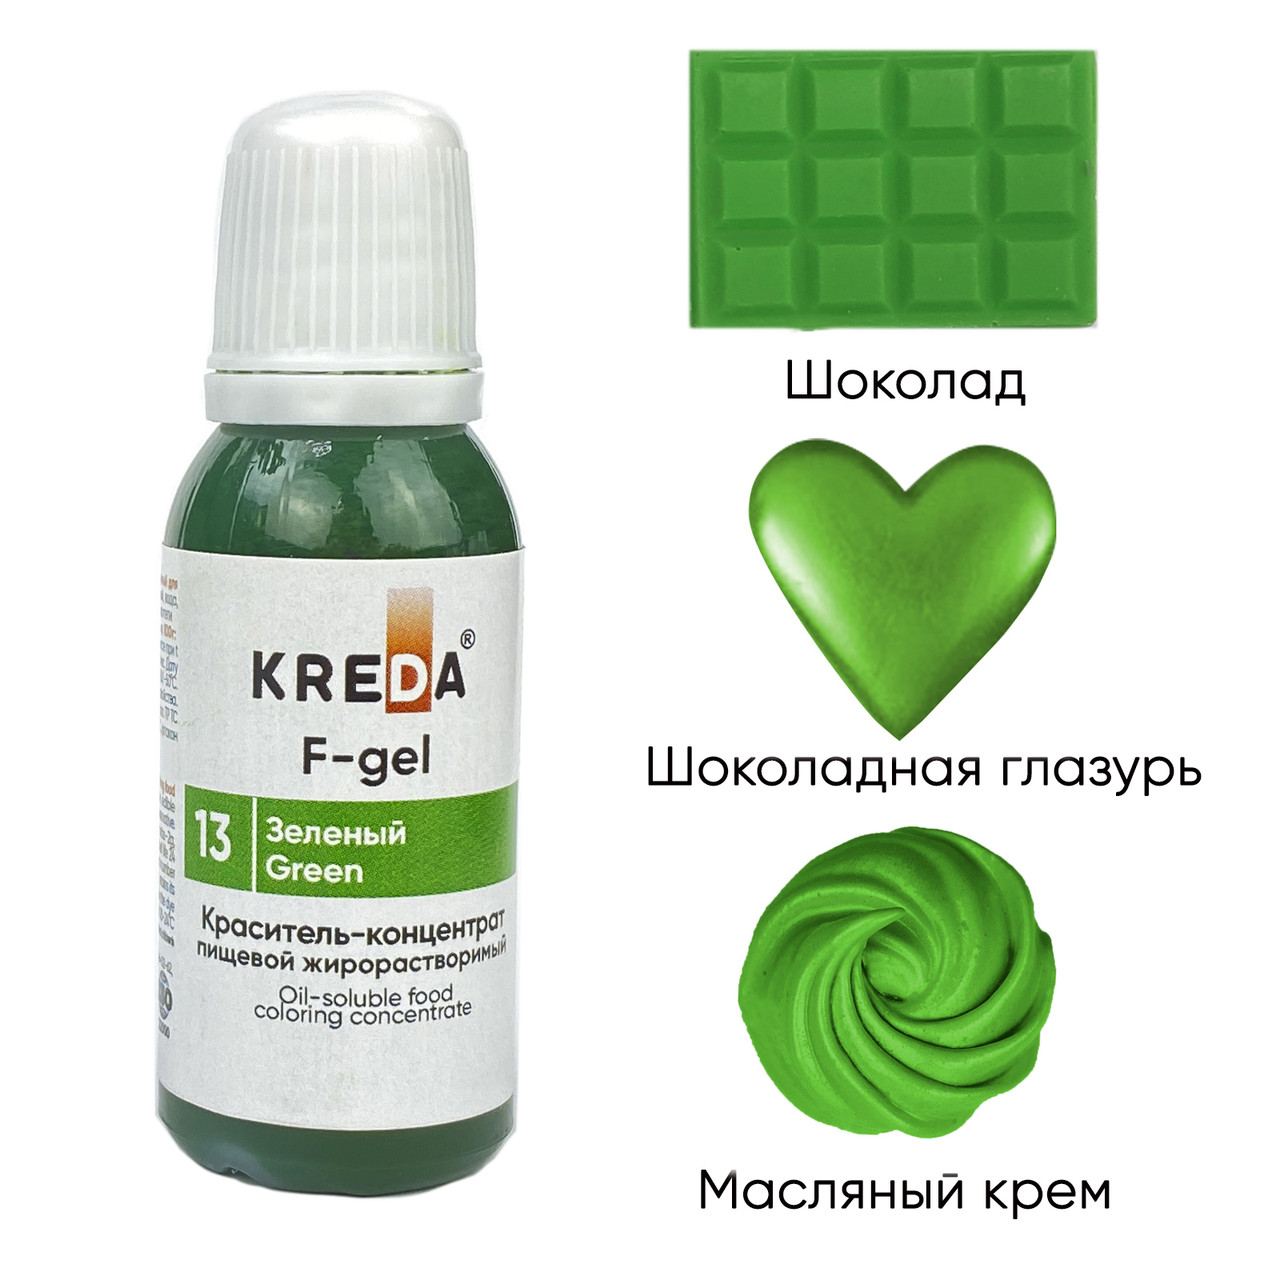 F-gel 13 зеленый, краситель концентрат жирорастворимый пищевой (20мл) KREDA